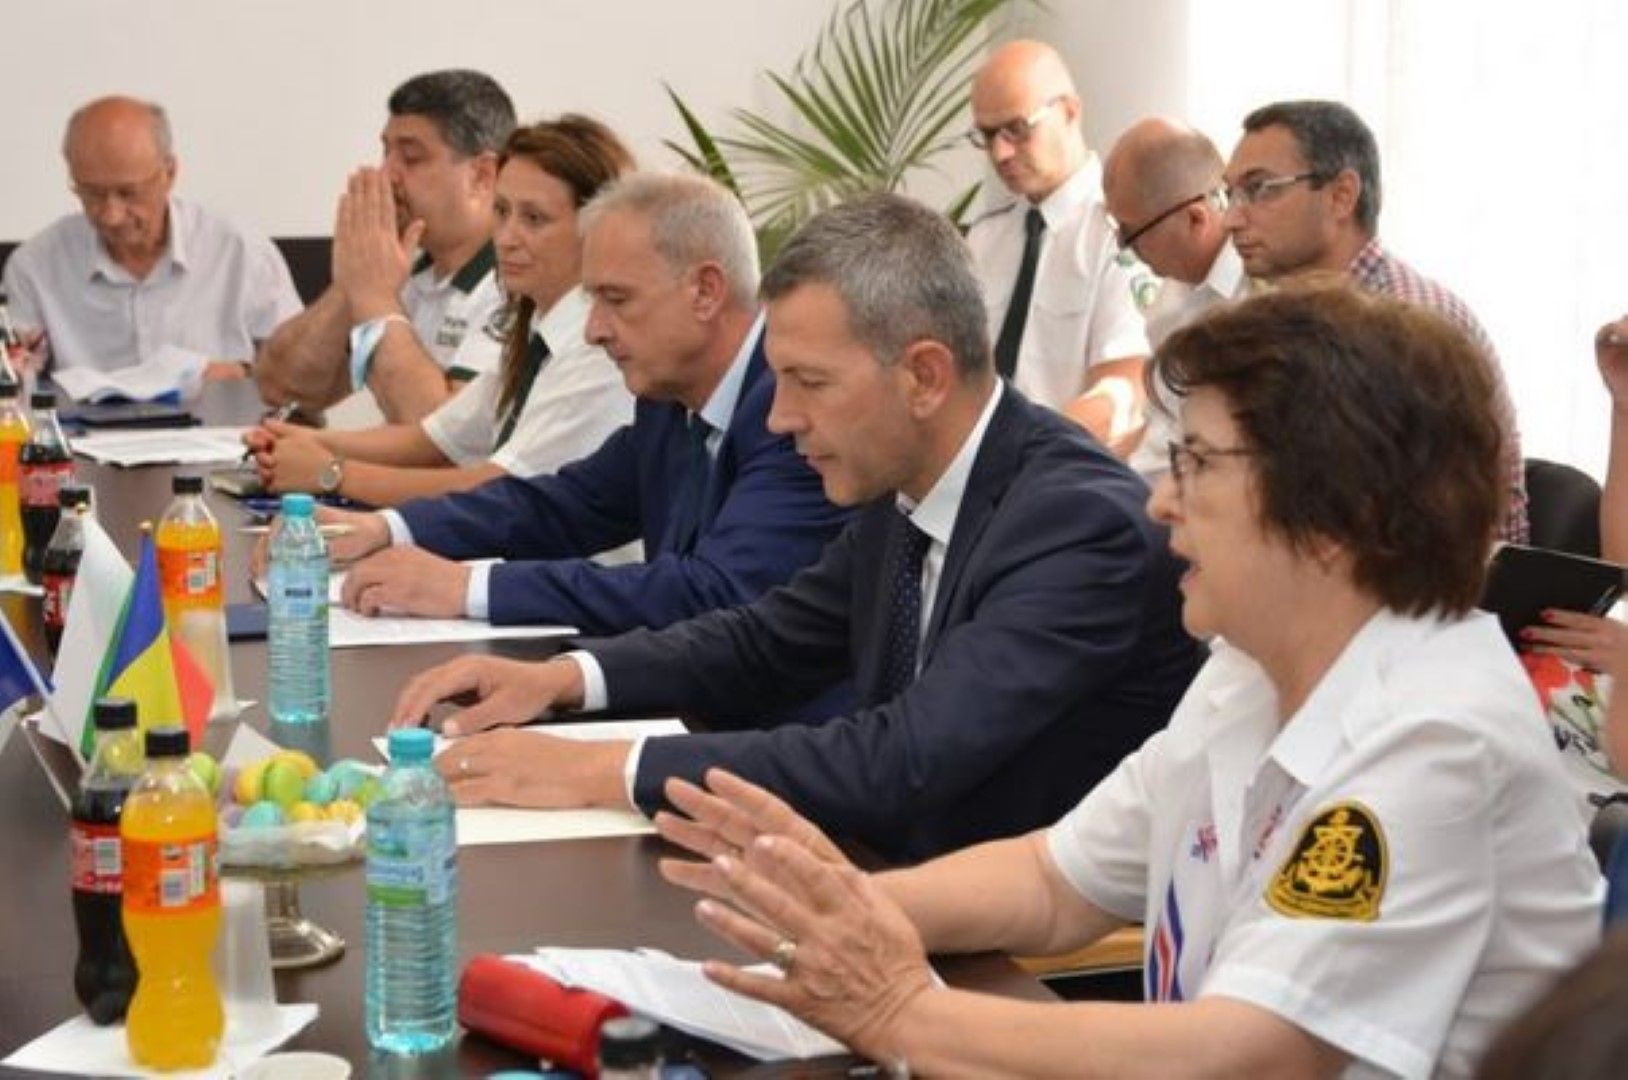 Българската делегация по време на срещата - министър Георги Тодоров е вторият отдясно